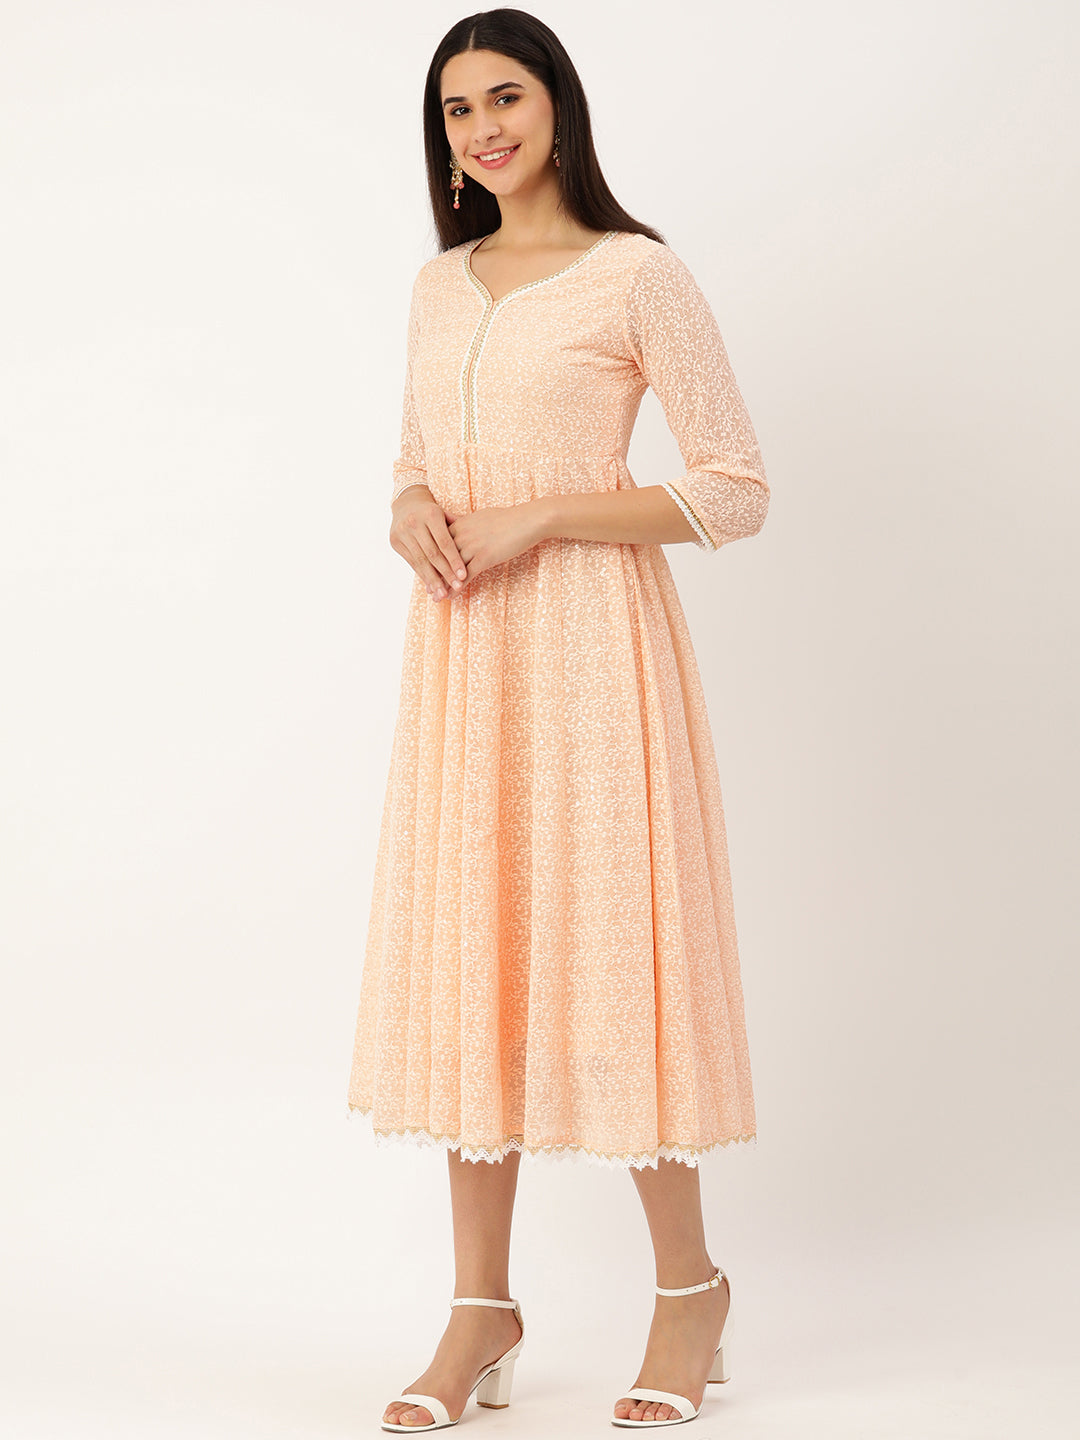 Peach-Coloured & White Chikankari Georgette Ethnic A-Line Midi Dress